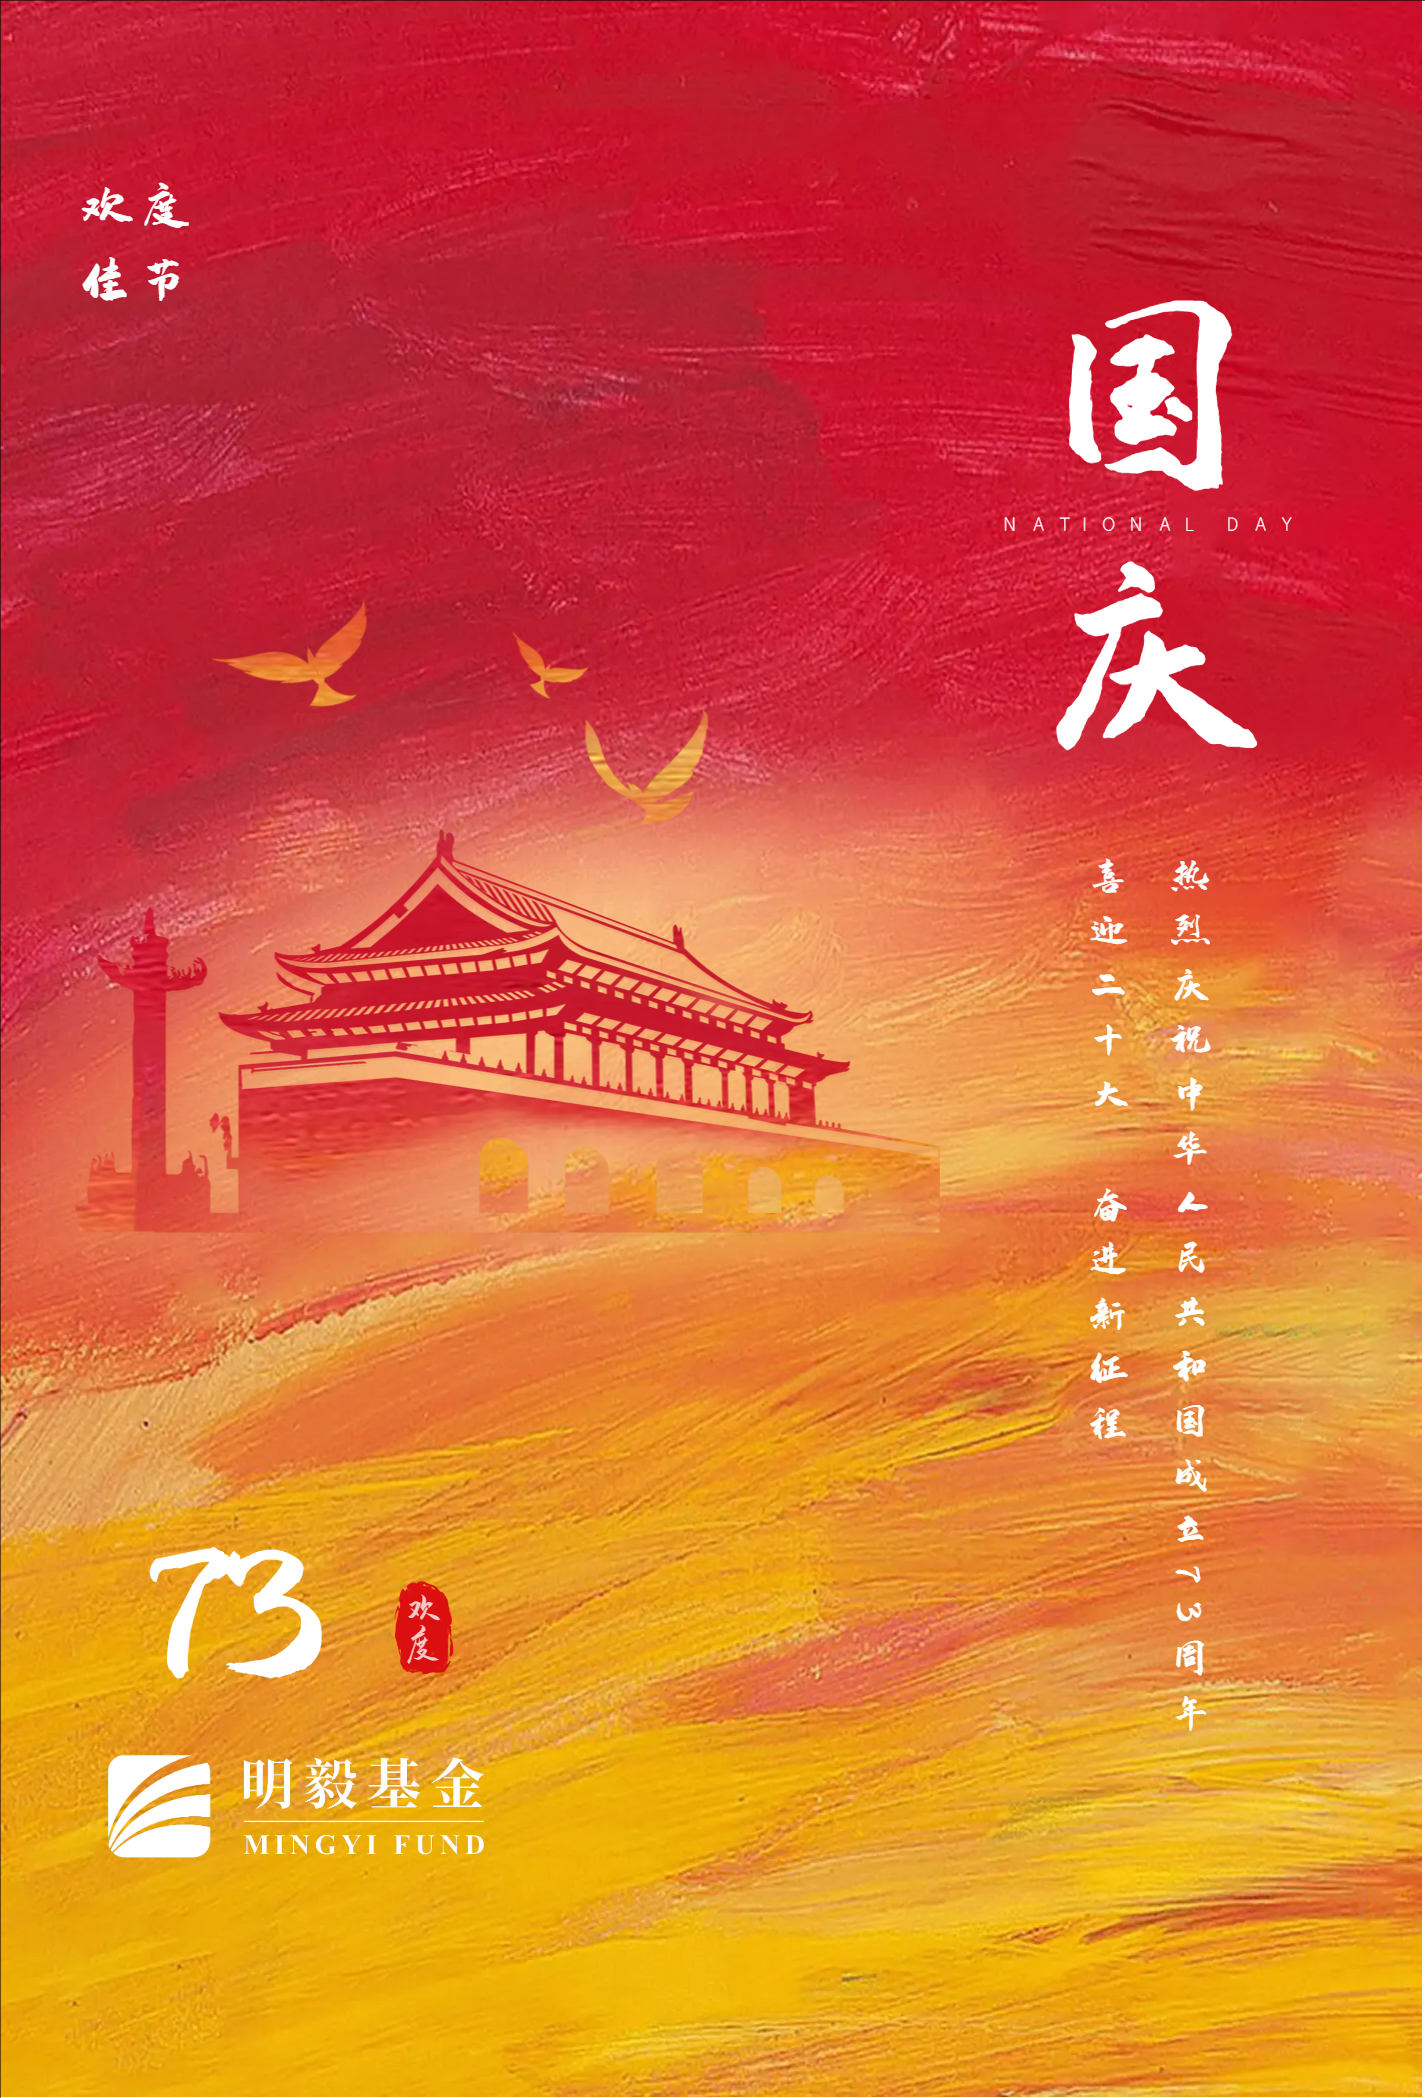 中华人民共和国70周年国庆节海报.jpg